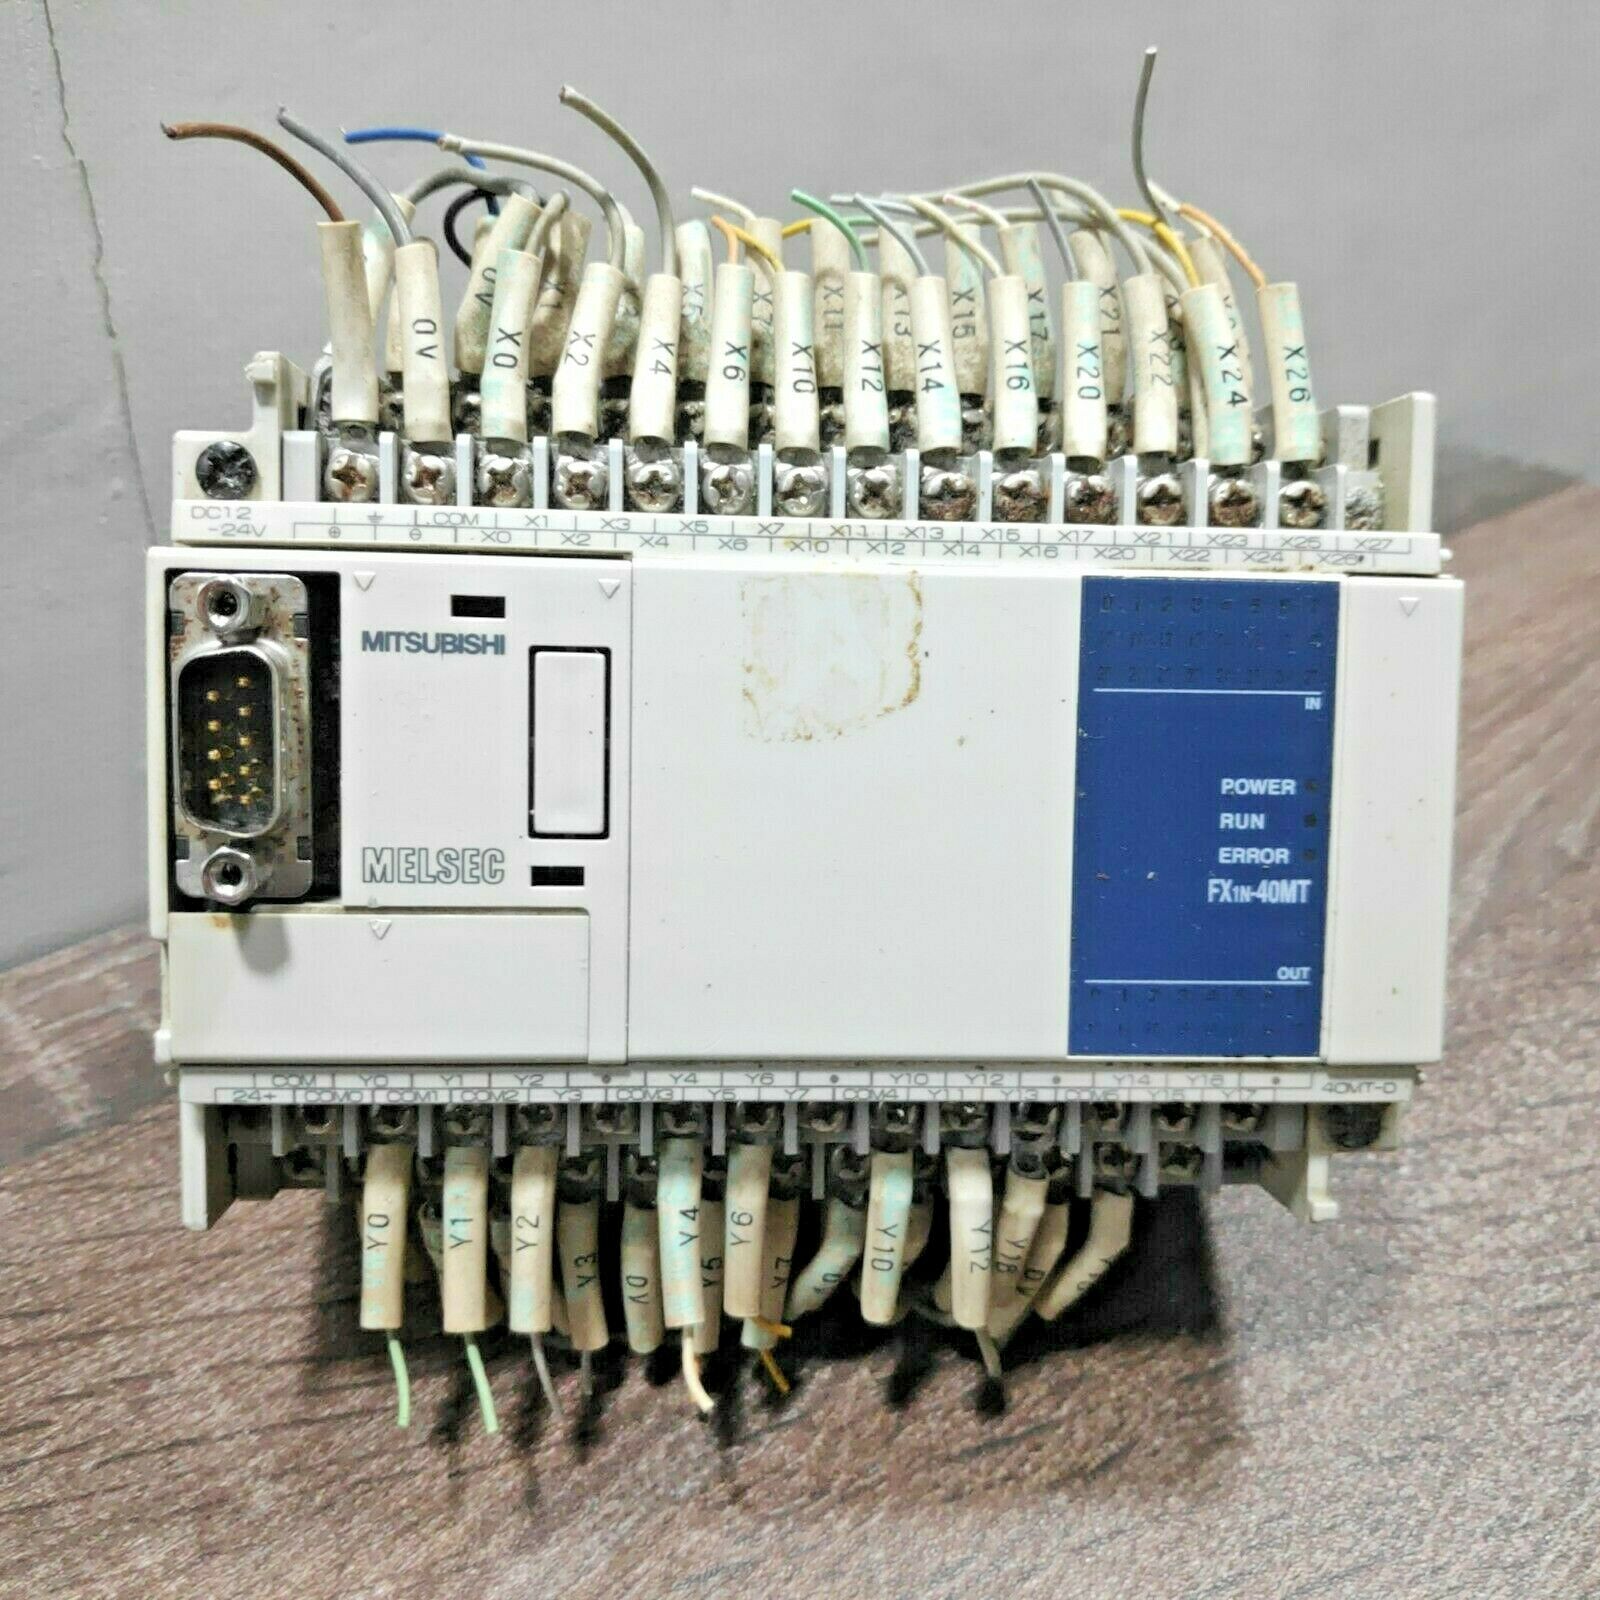 MITSUBISHI FX1N-40MT-D MELSEC PLC